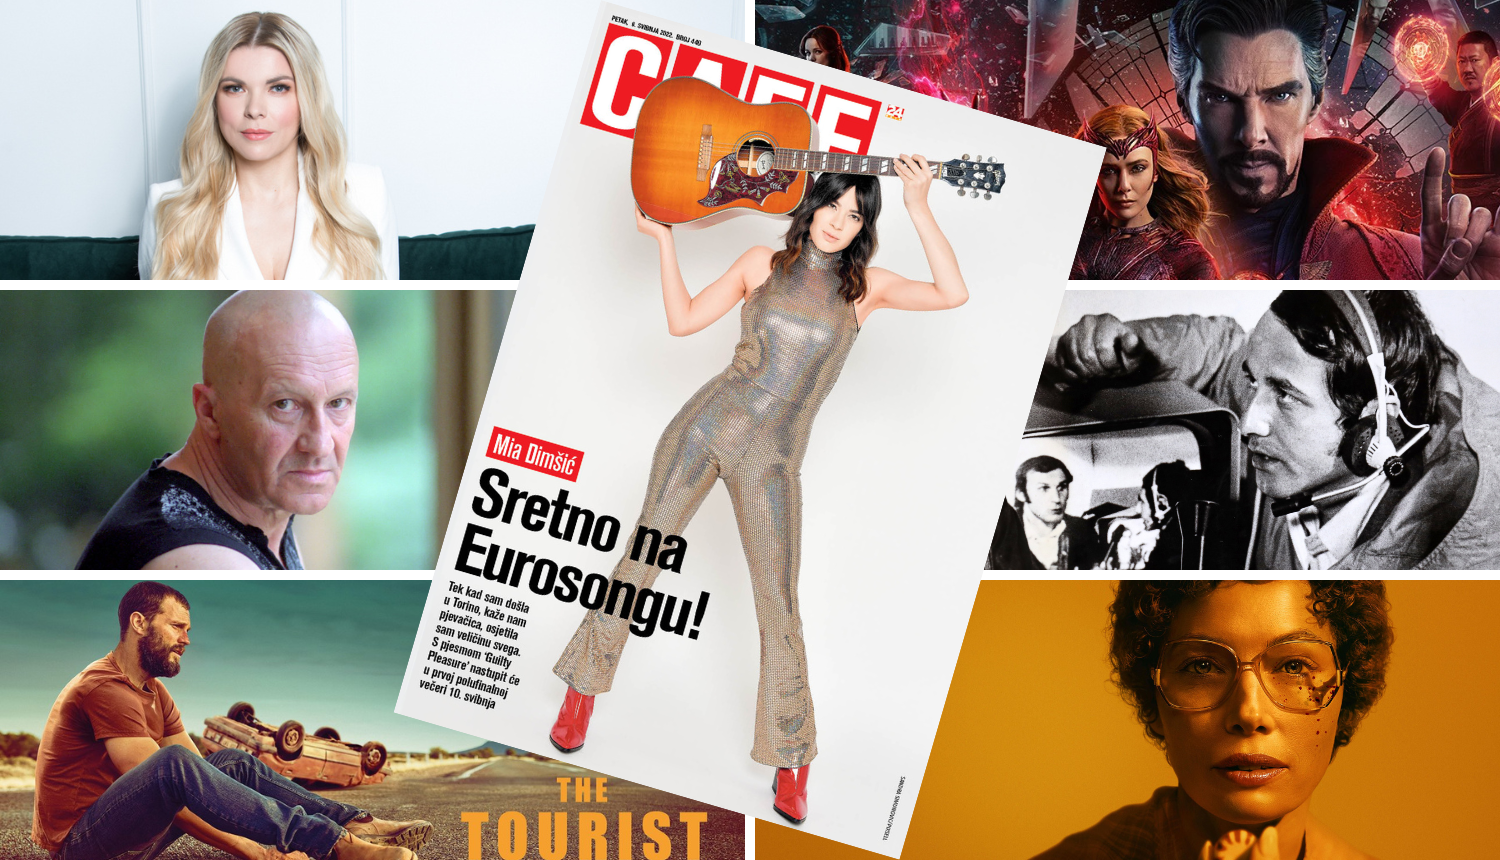 Mia Dimšić, naša predstavnica na Eurosongu, na naslovnici Cafea utjelovila je Taylor Swift